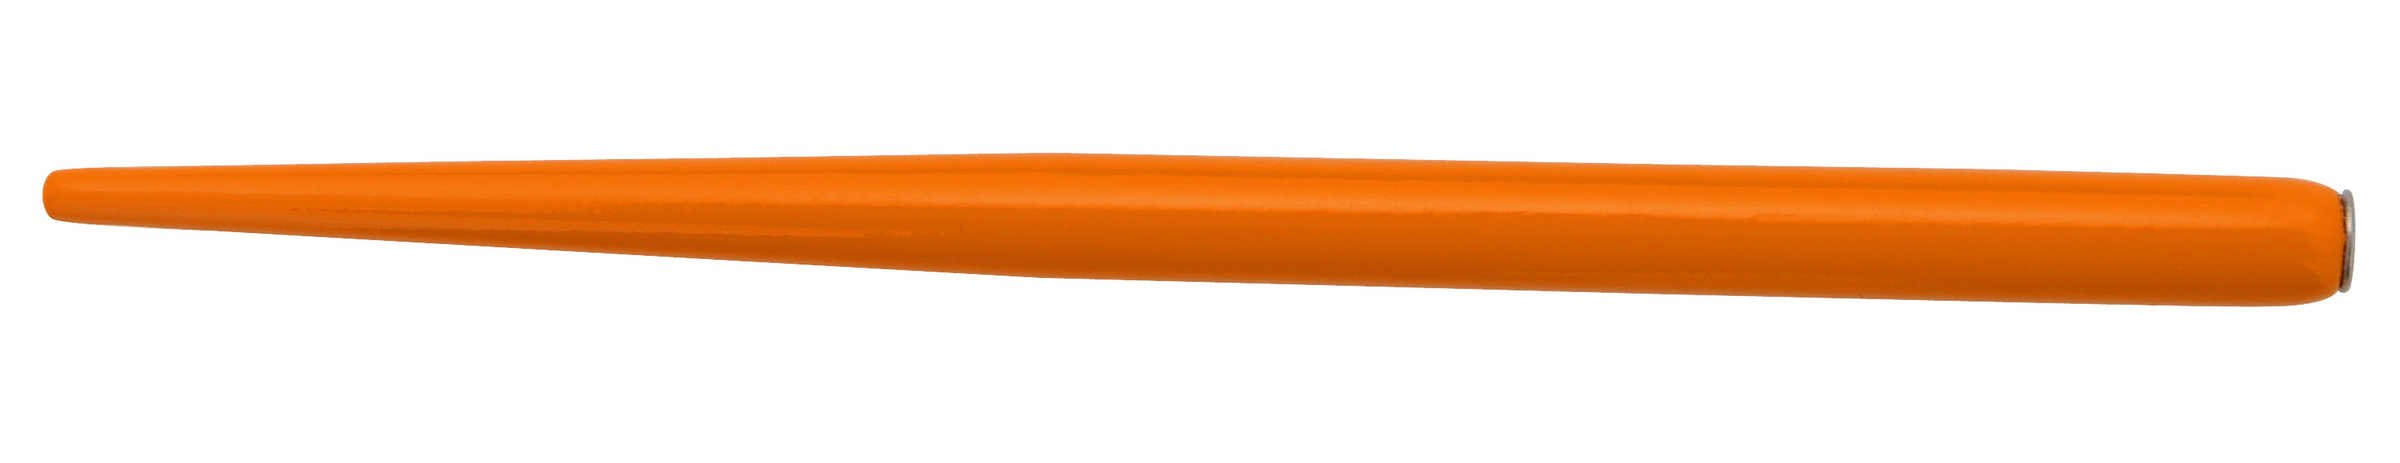 Держатель для пера MANUSCRIPT оранжевый по 219.00 руб от Manuscript pen company